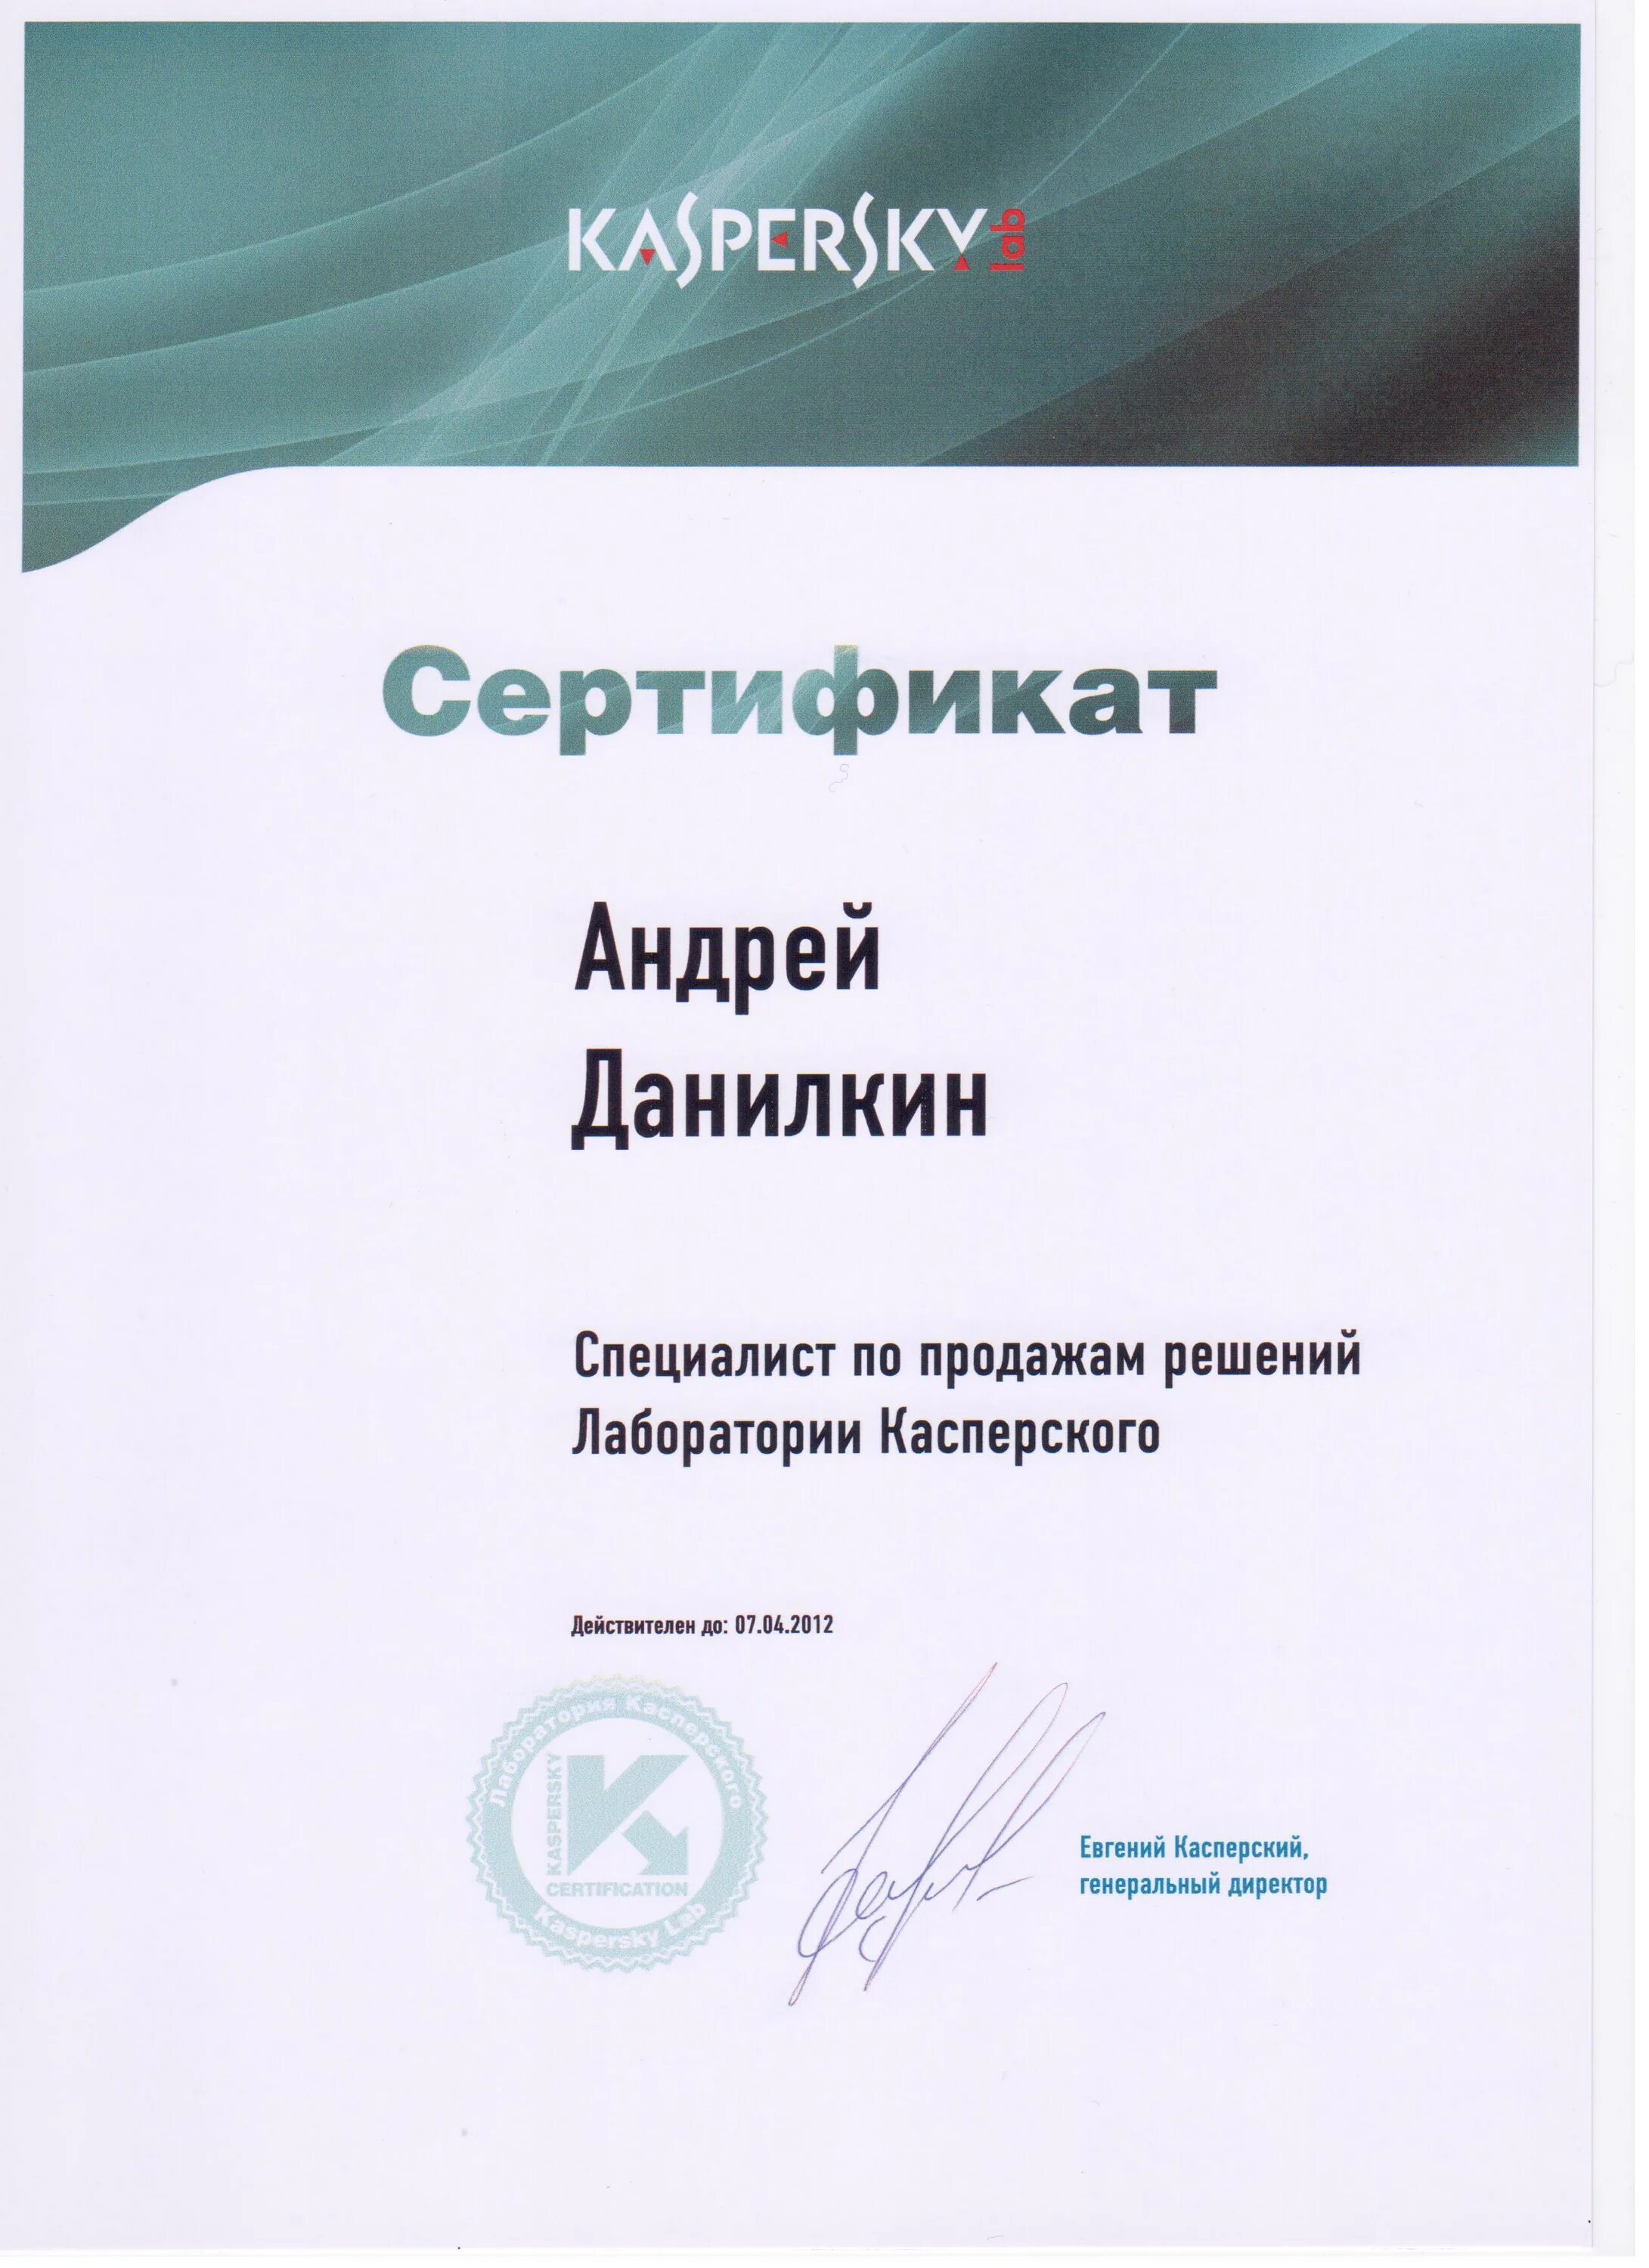 Сертификат Kaspersky. Сертификат Касперский.